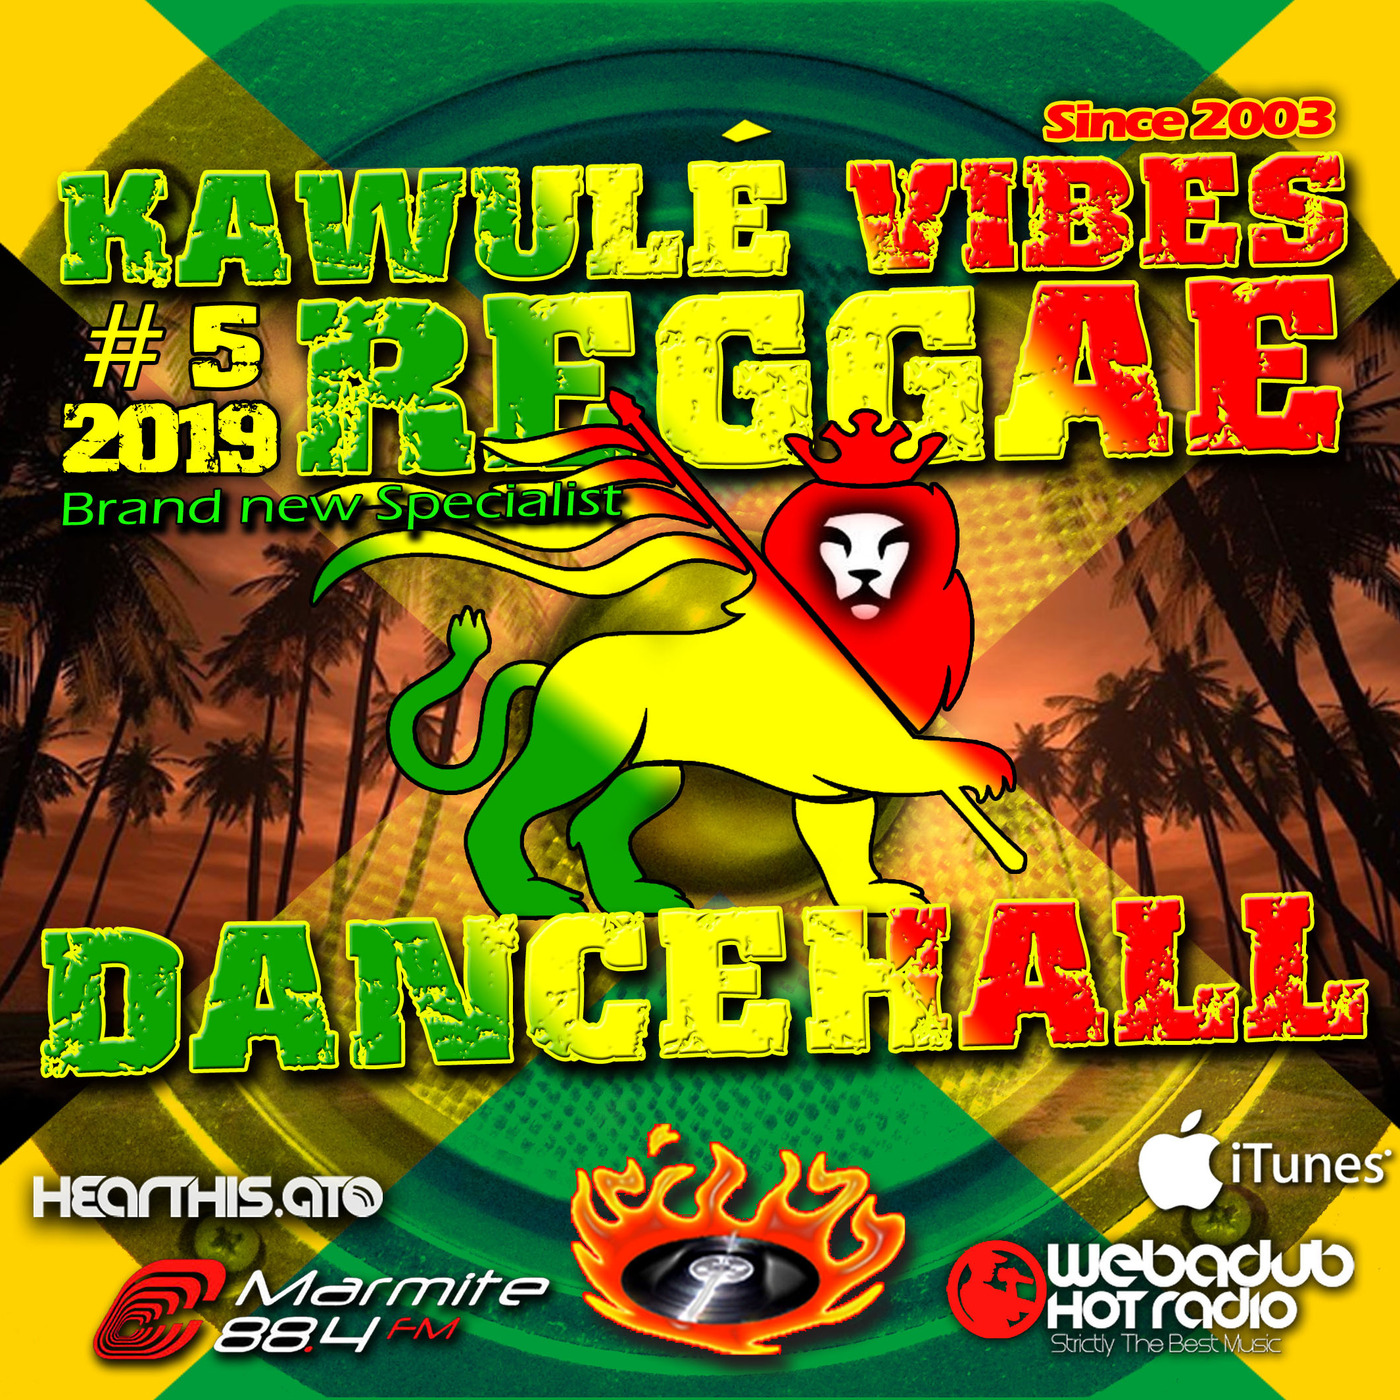 Reggae Dancehall Kawulé  Vibes Show #5 - 2019